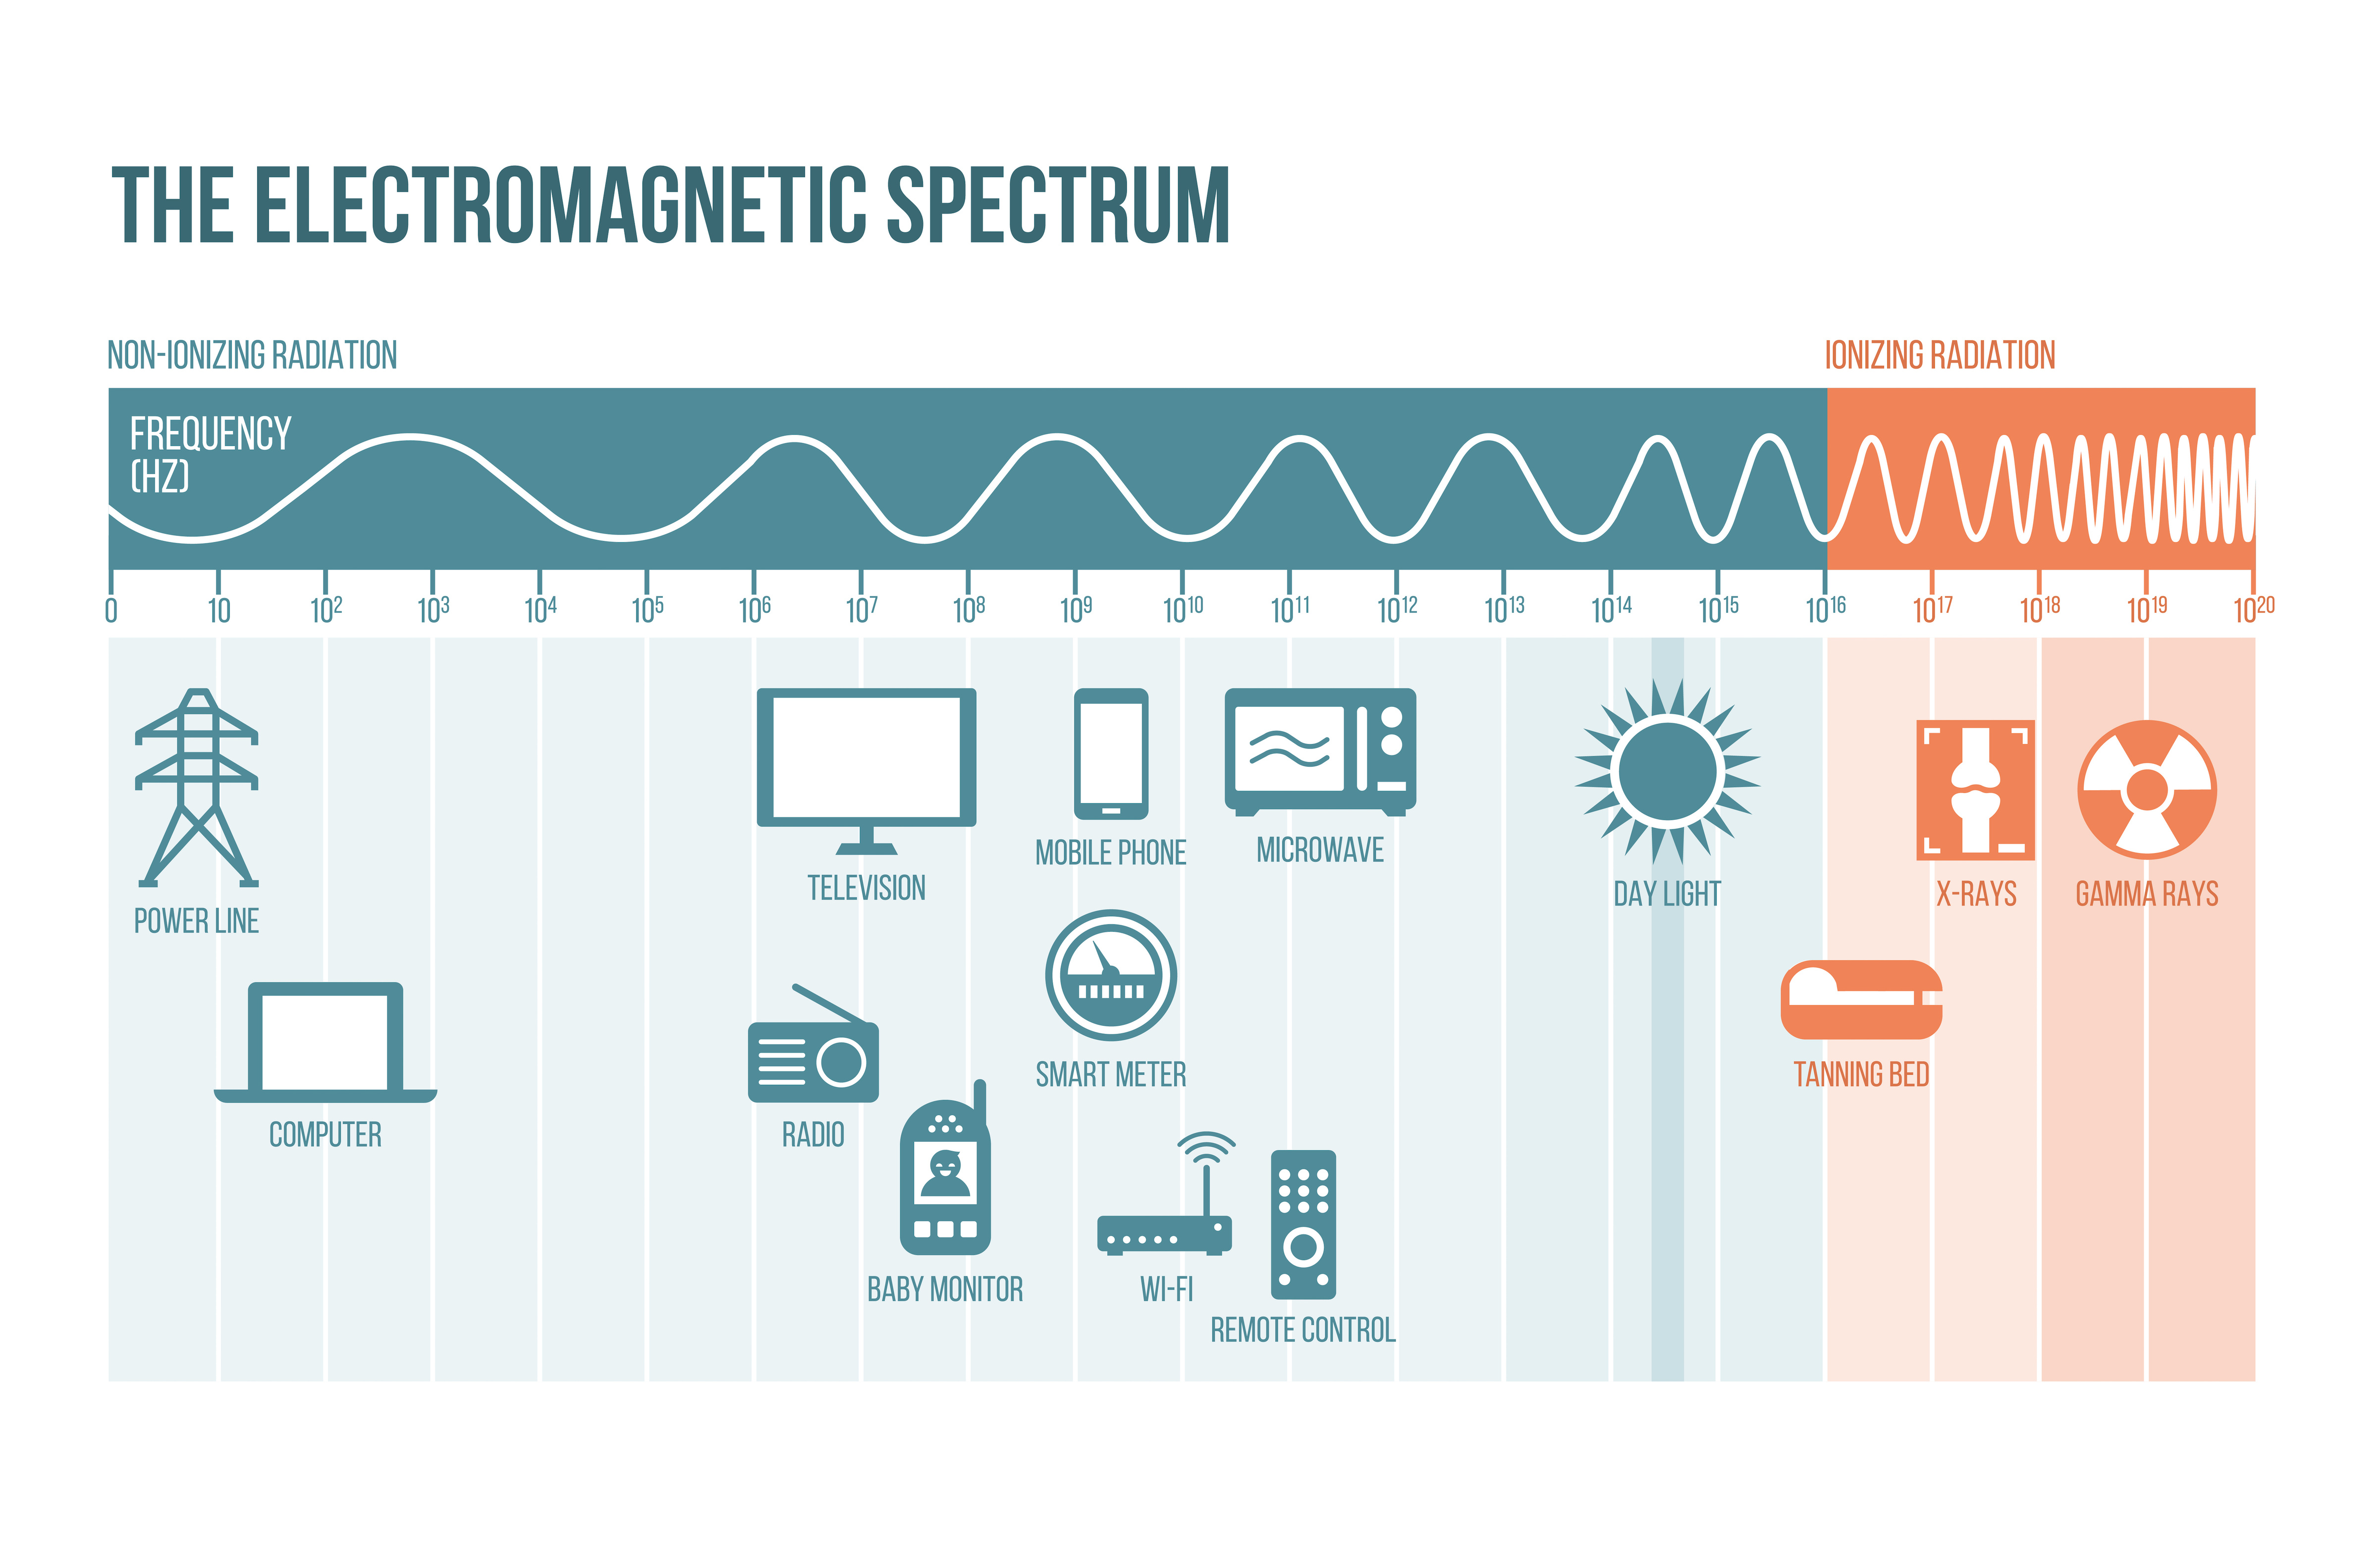 Electromagnetic (EM) Spectrum